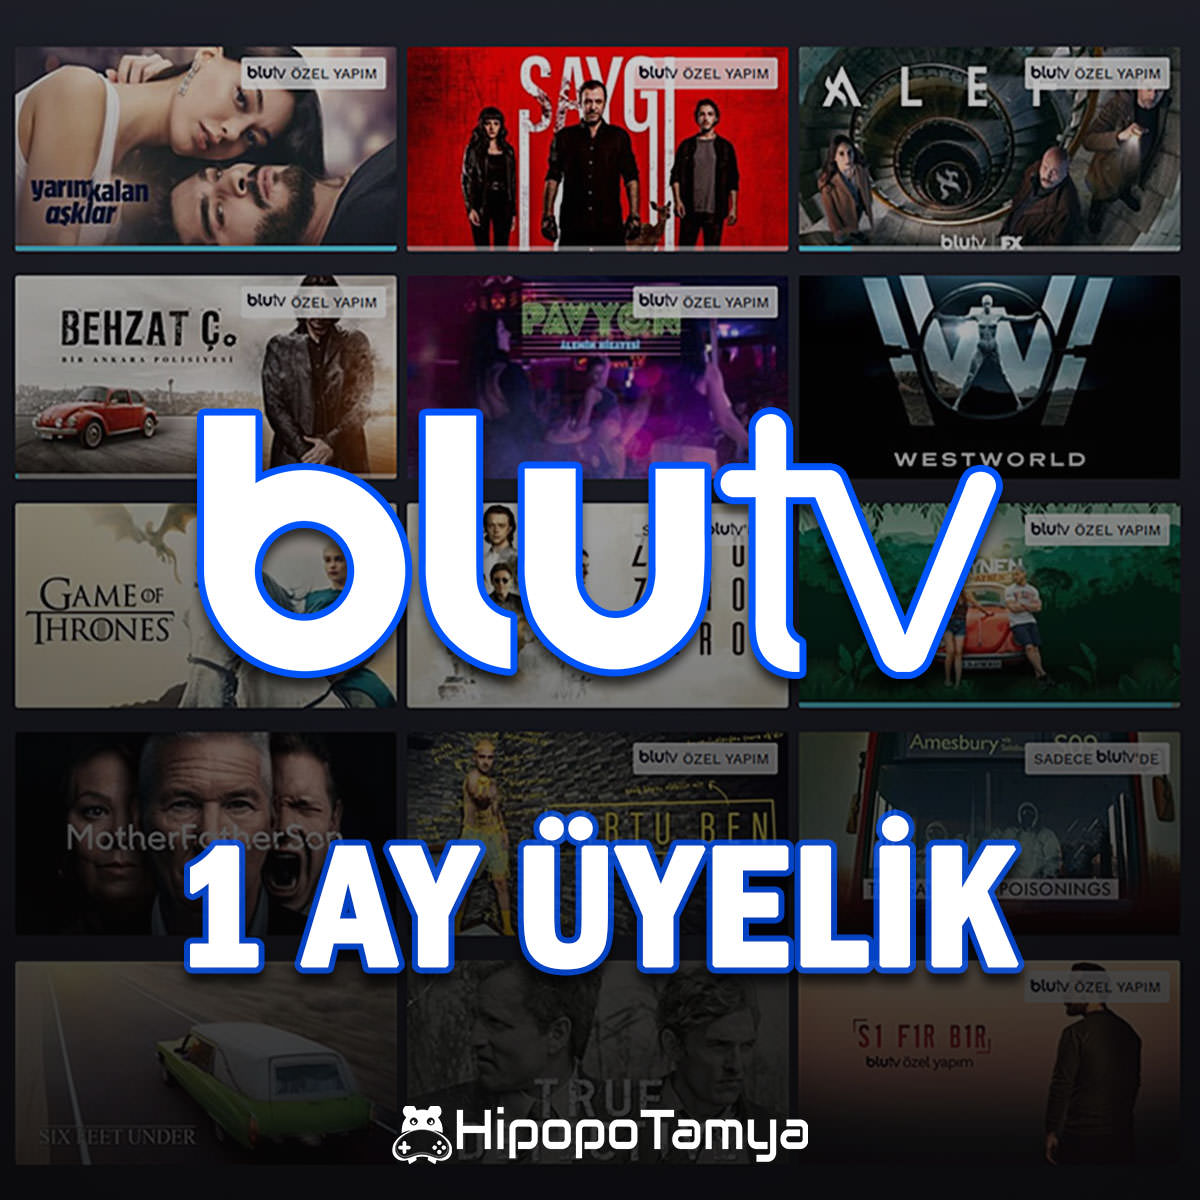 BluTV Üyelik 1 Ay